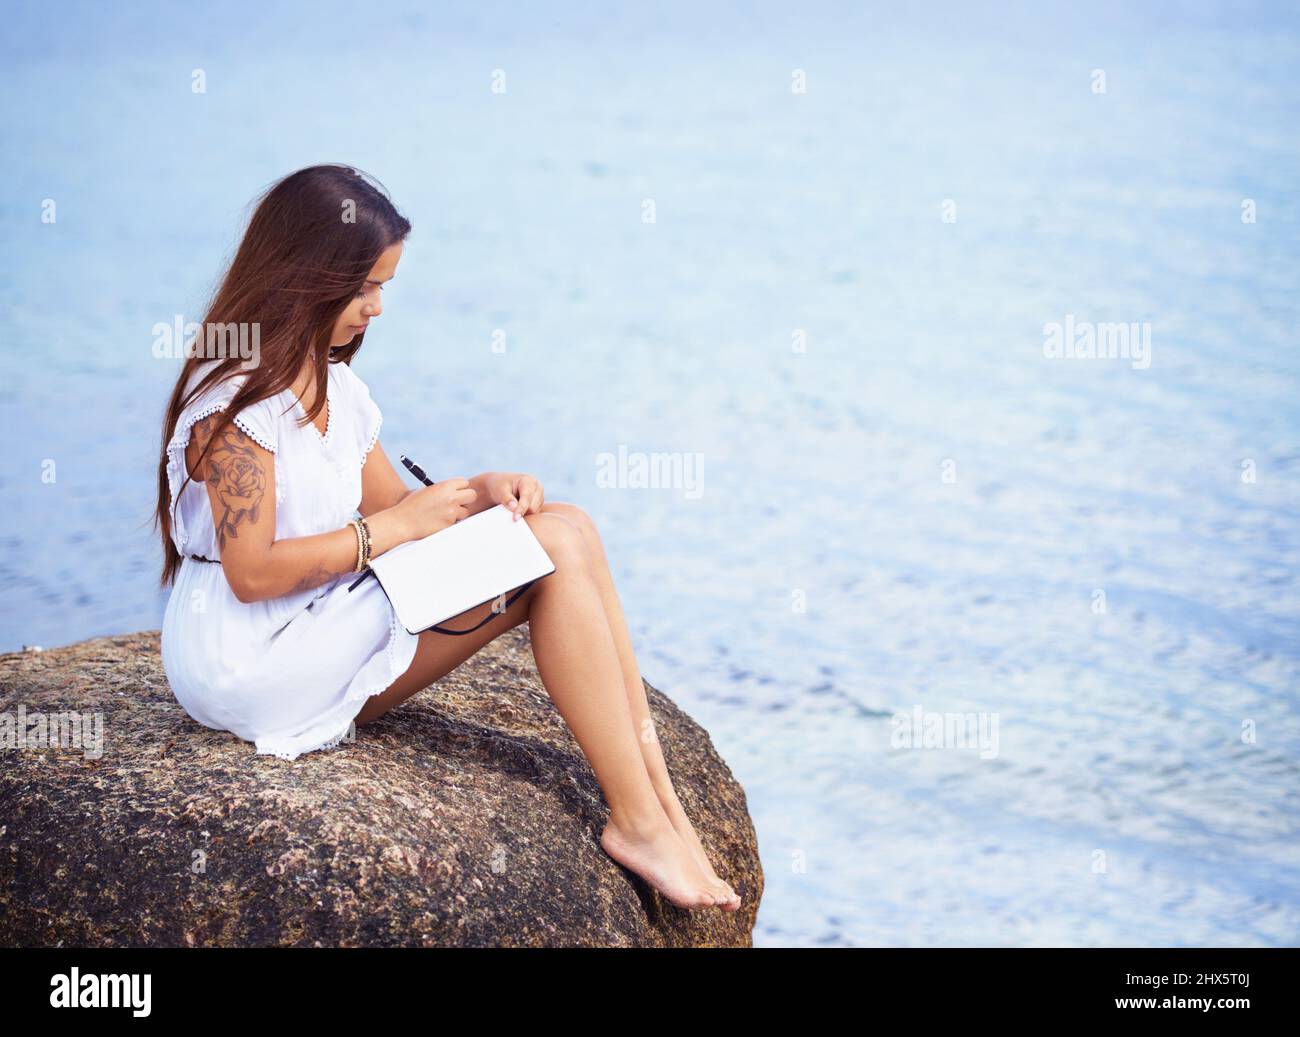 Une vue profonde entourée d'une nature tranquille. Prise de vue en longueur d'une magnifique jeune femme tatouée assise sur un rocher écrivant dans un journal. Banque D'Images